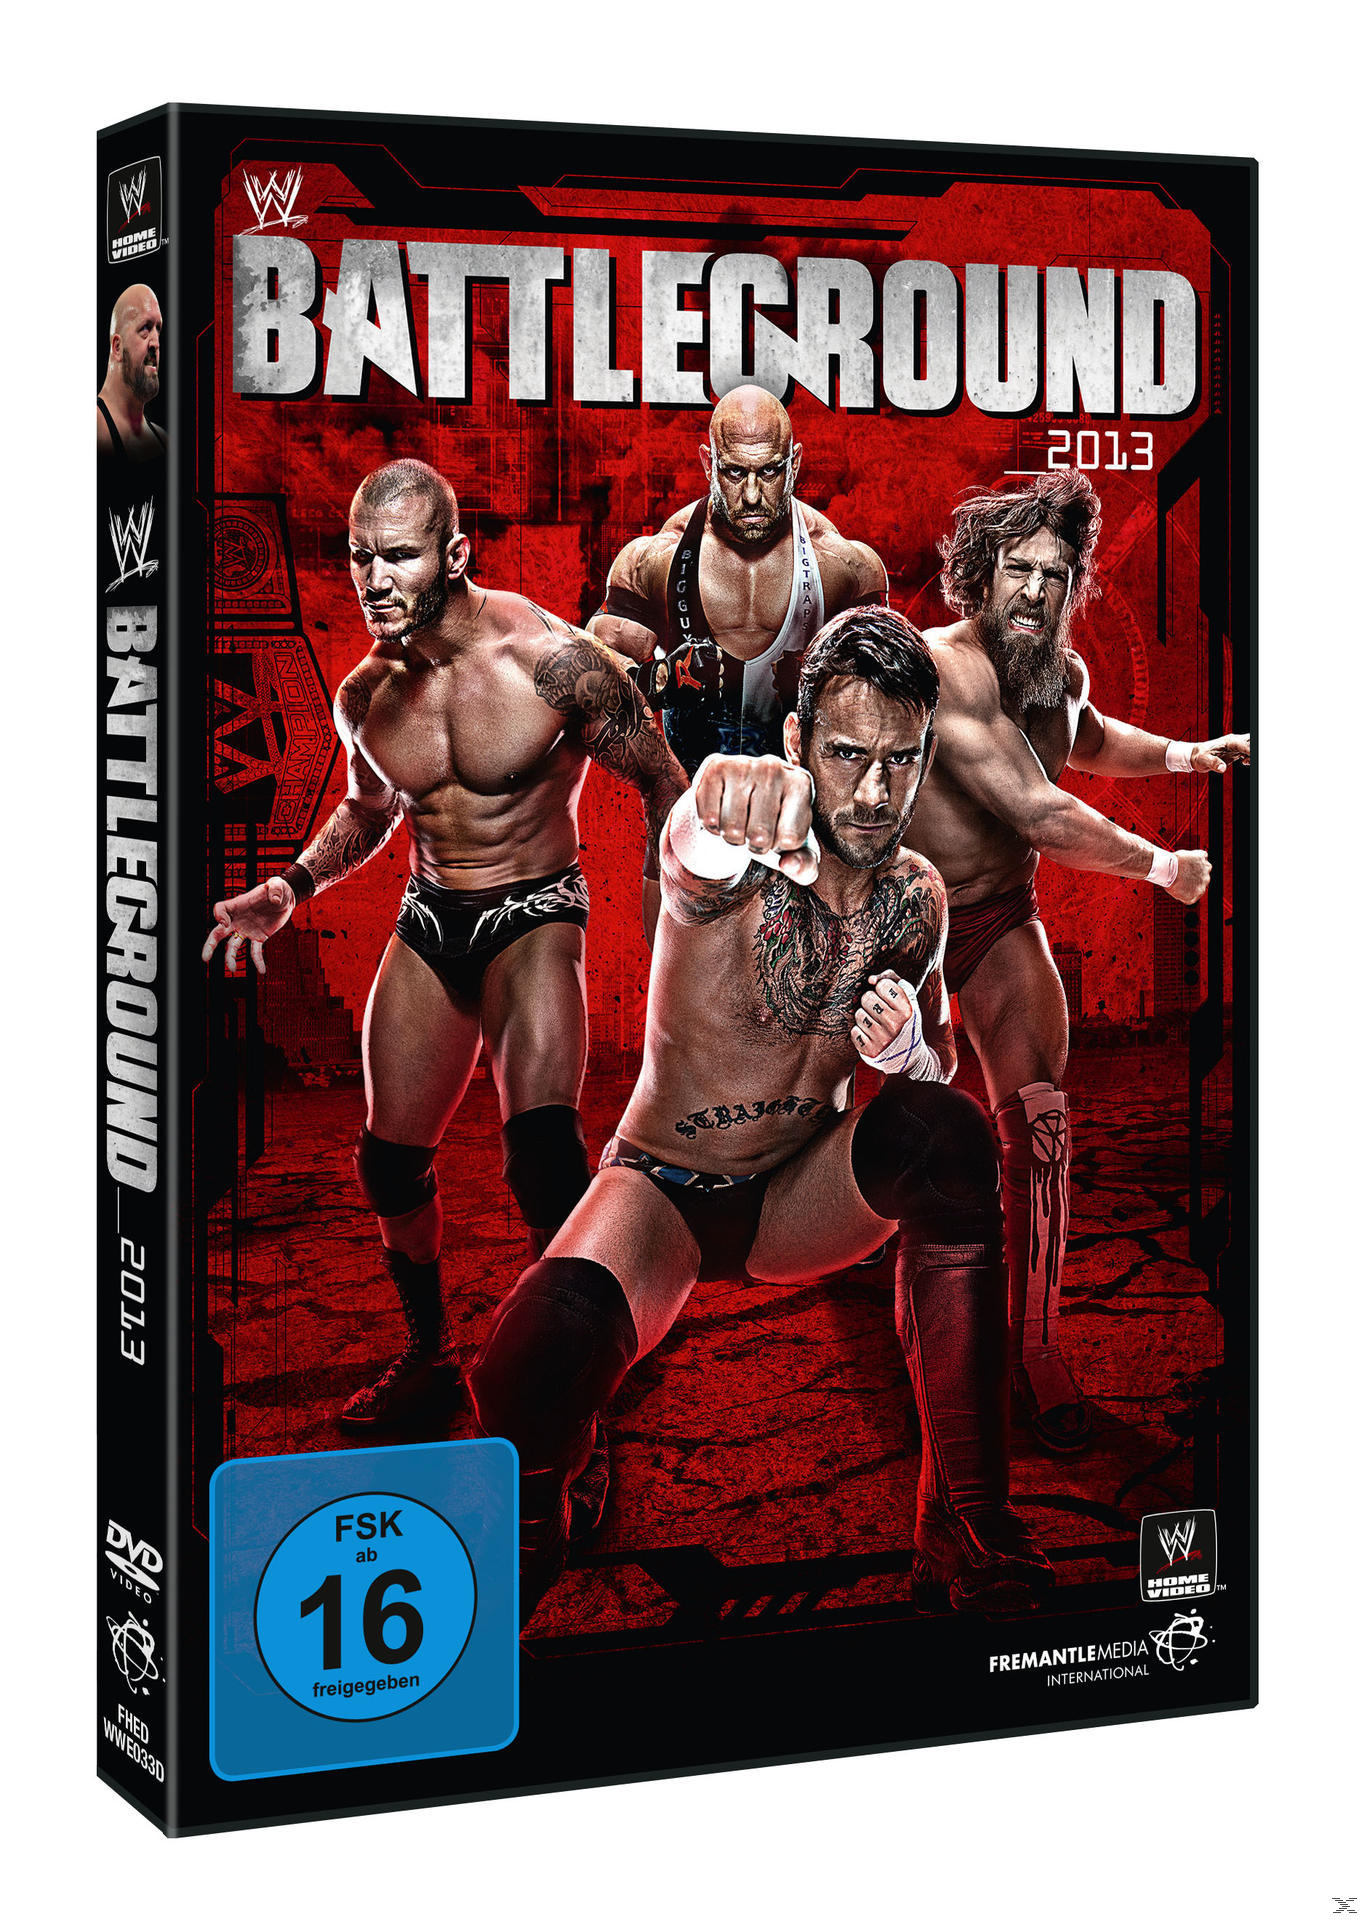 Battleground 2013 DVD